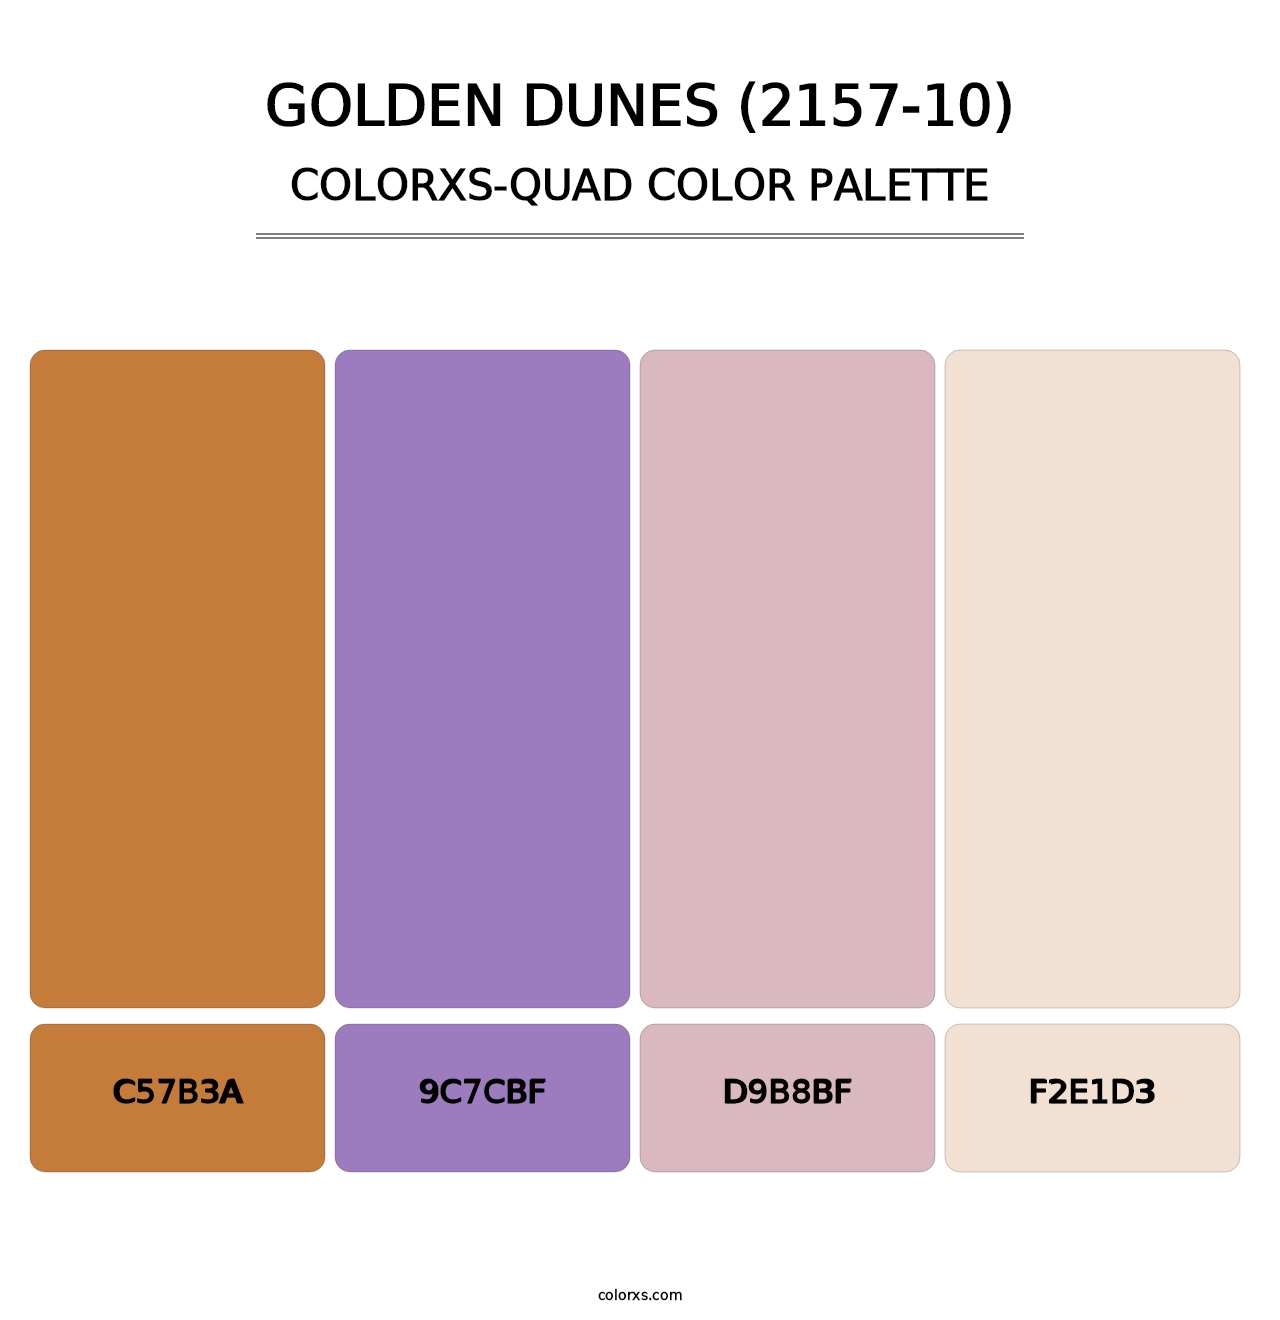 Golden Dunes (2157-10) - Colorxs Quad Palette